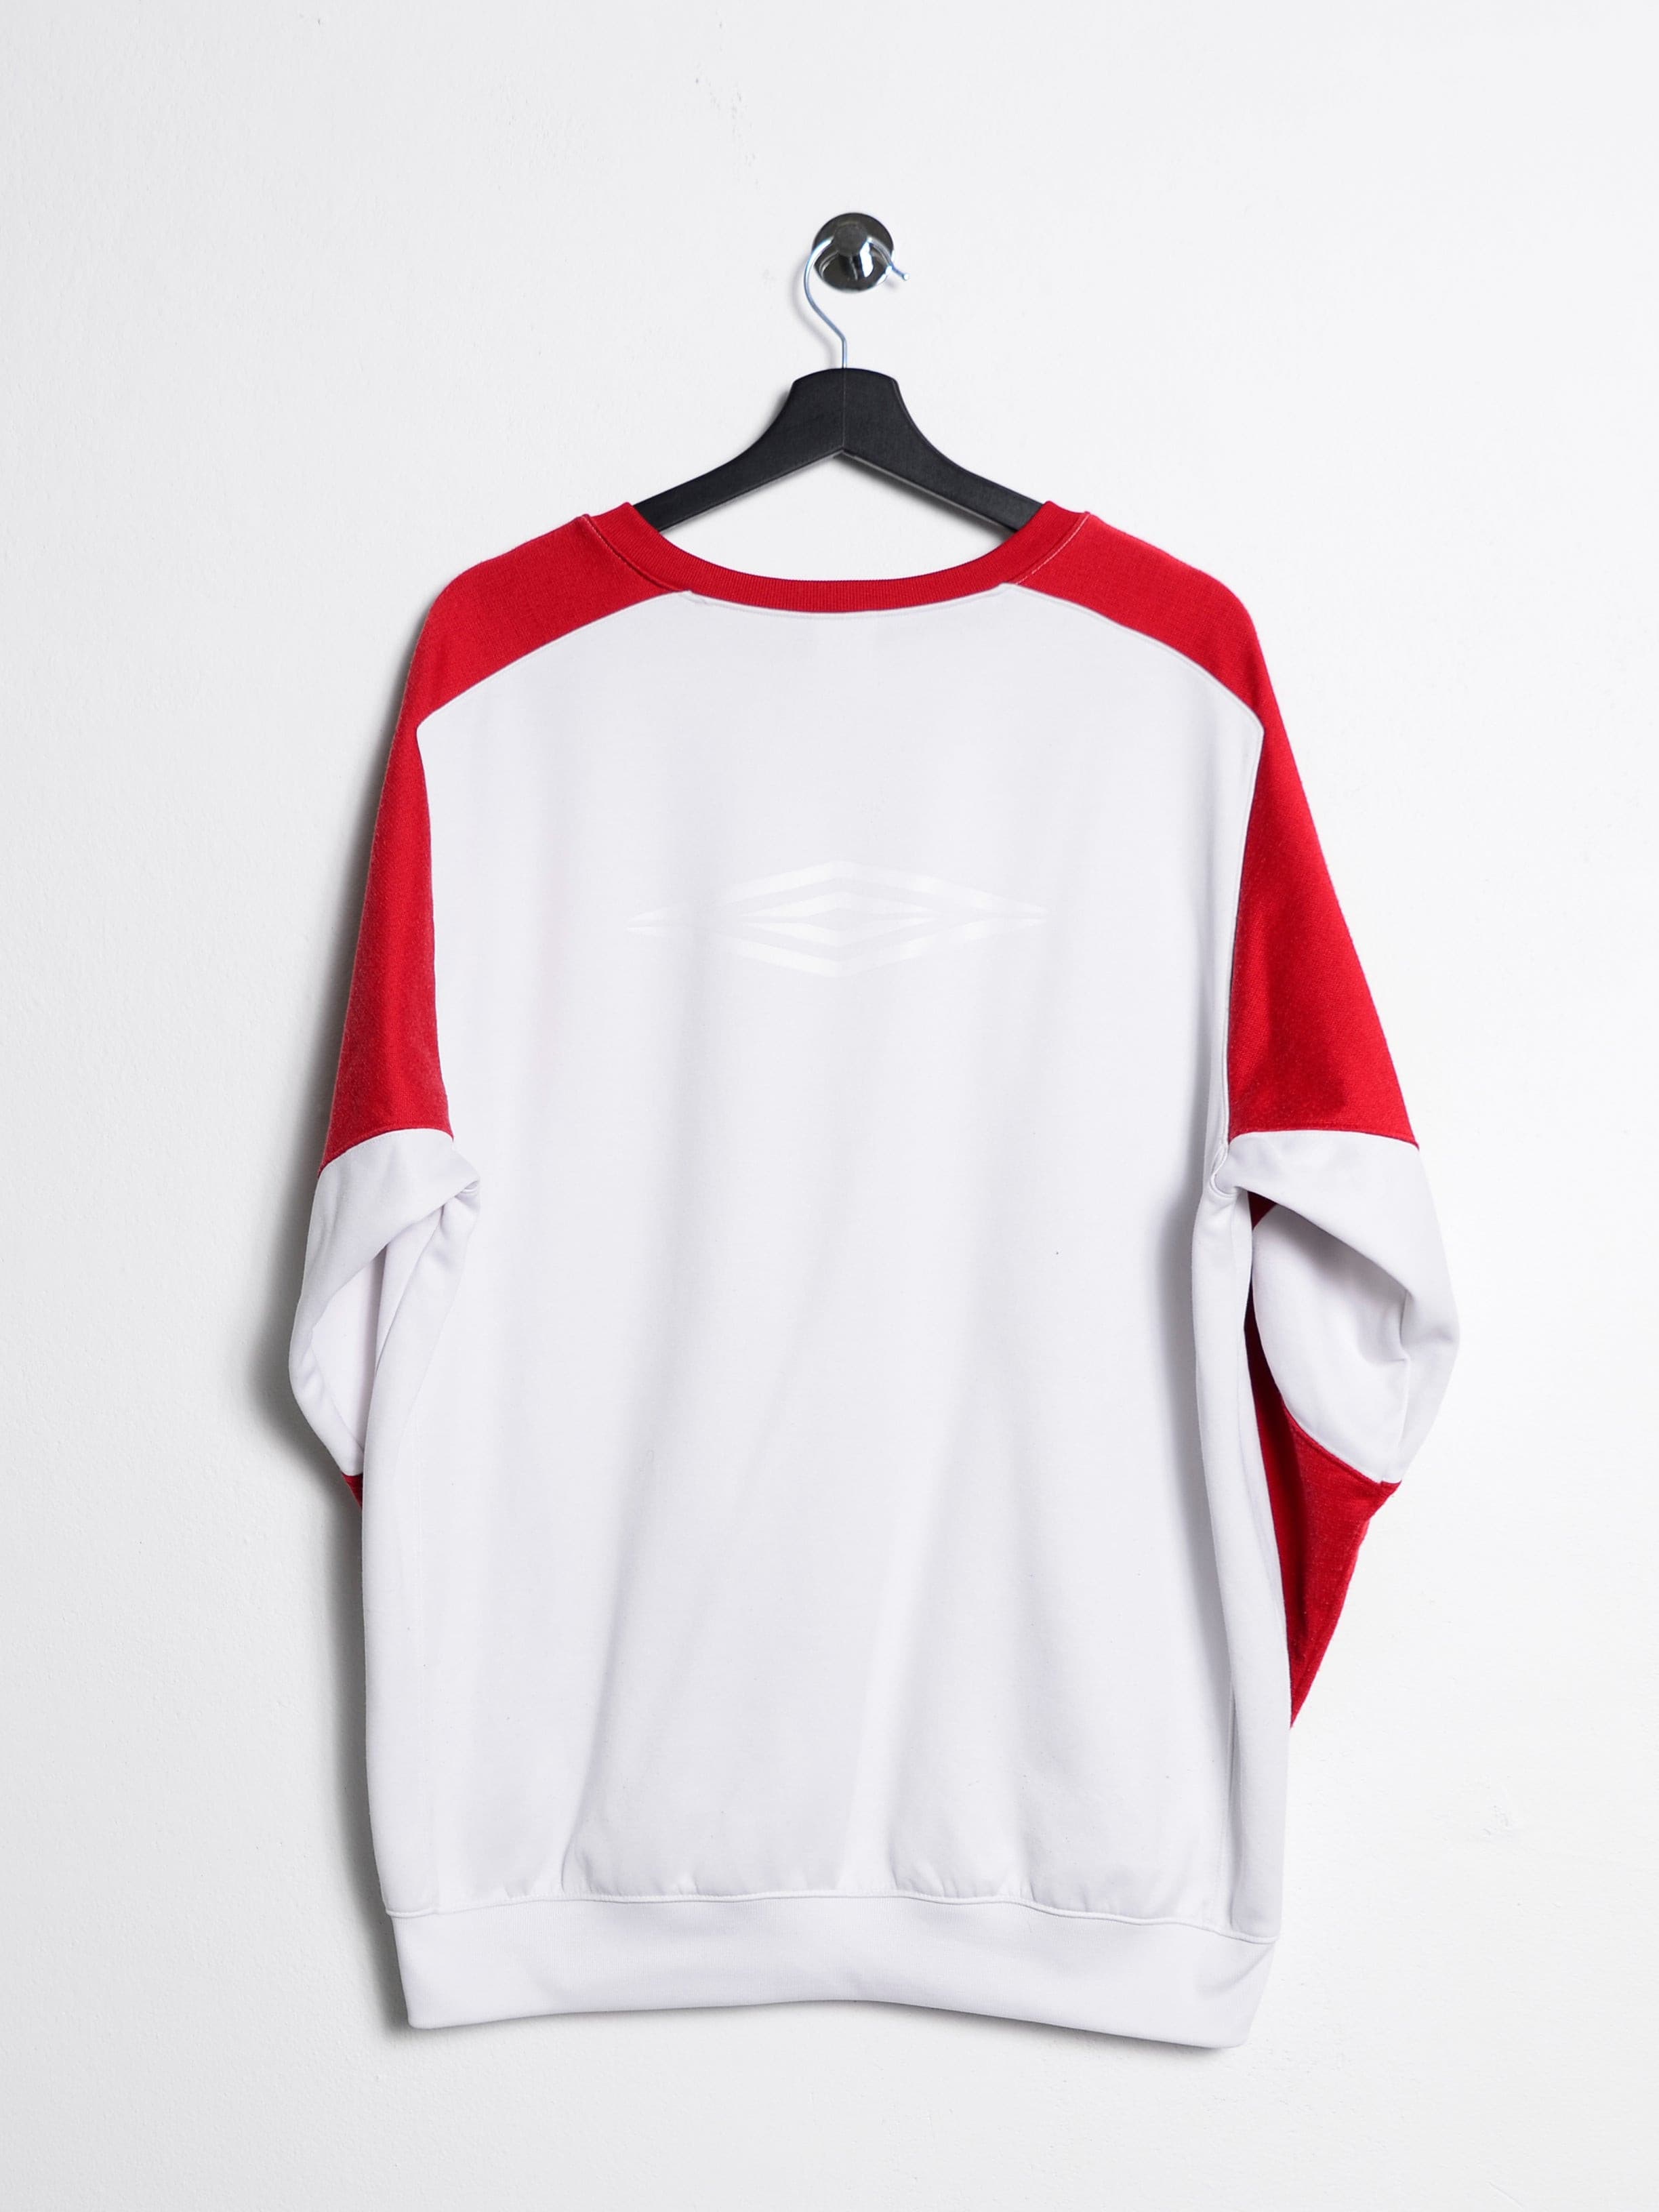 Umbro Sweatshirt White // X-Large - RHAGHOUSE VINTAGE